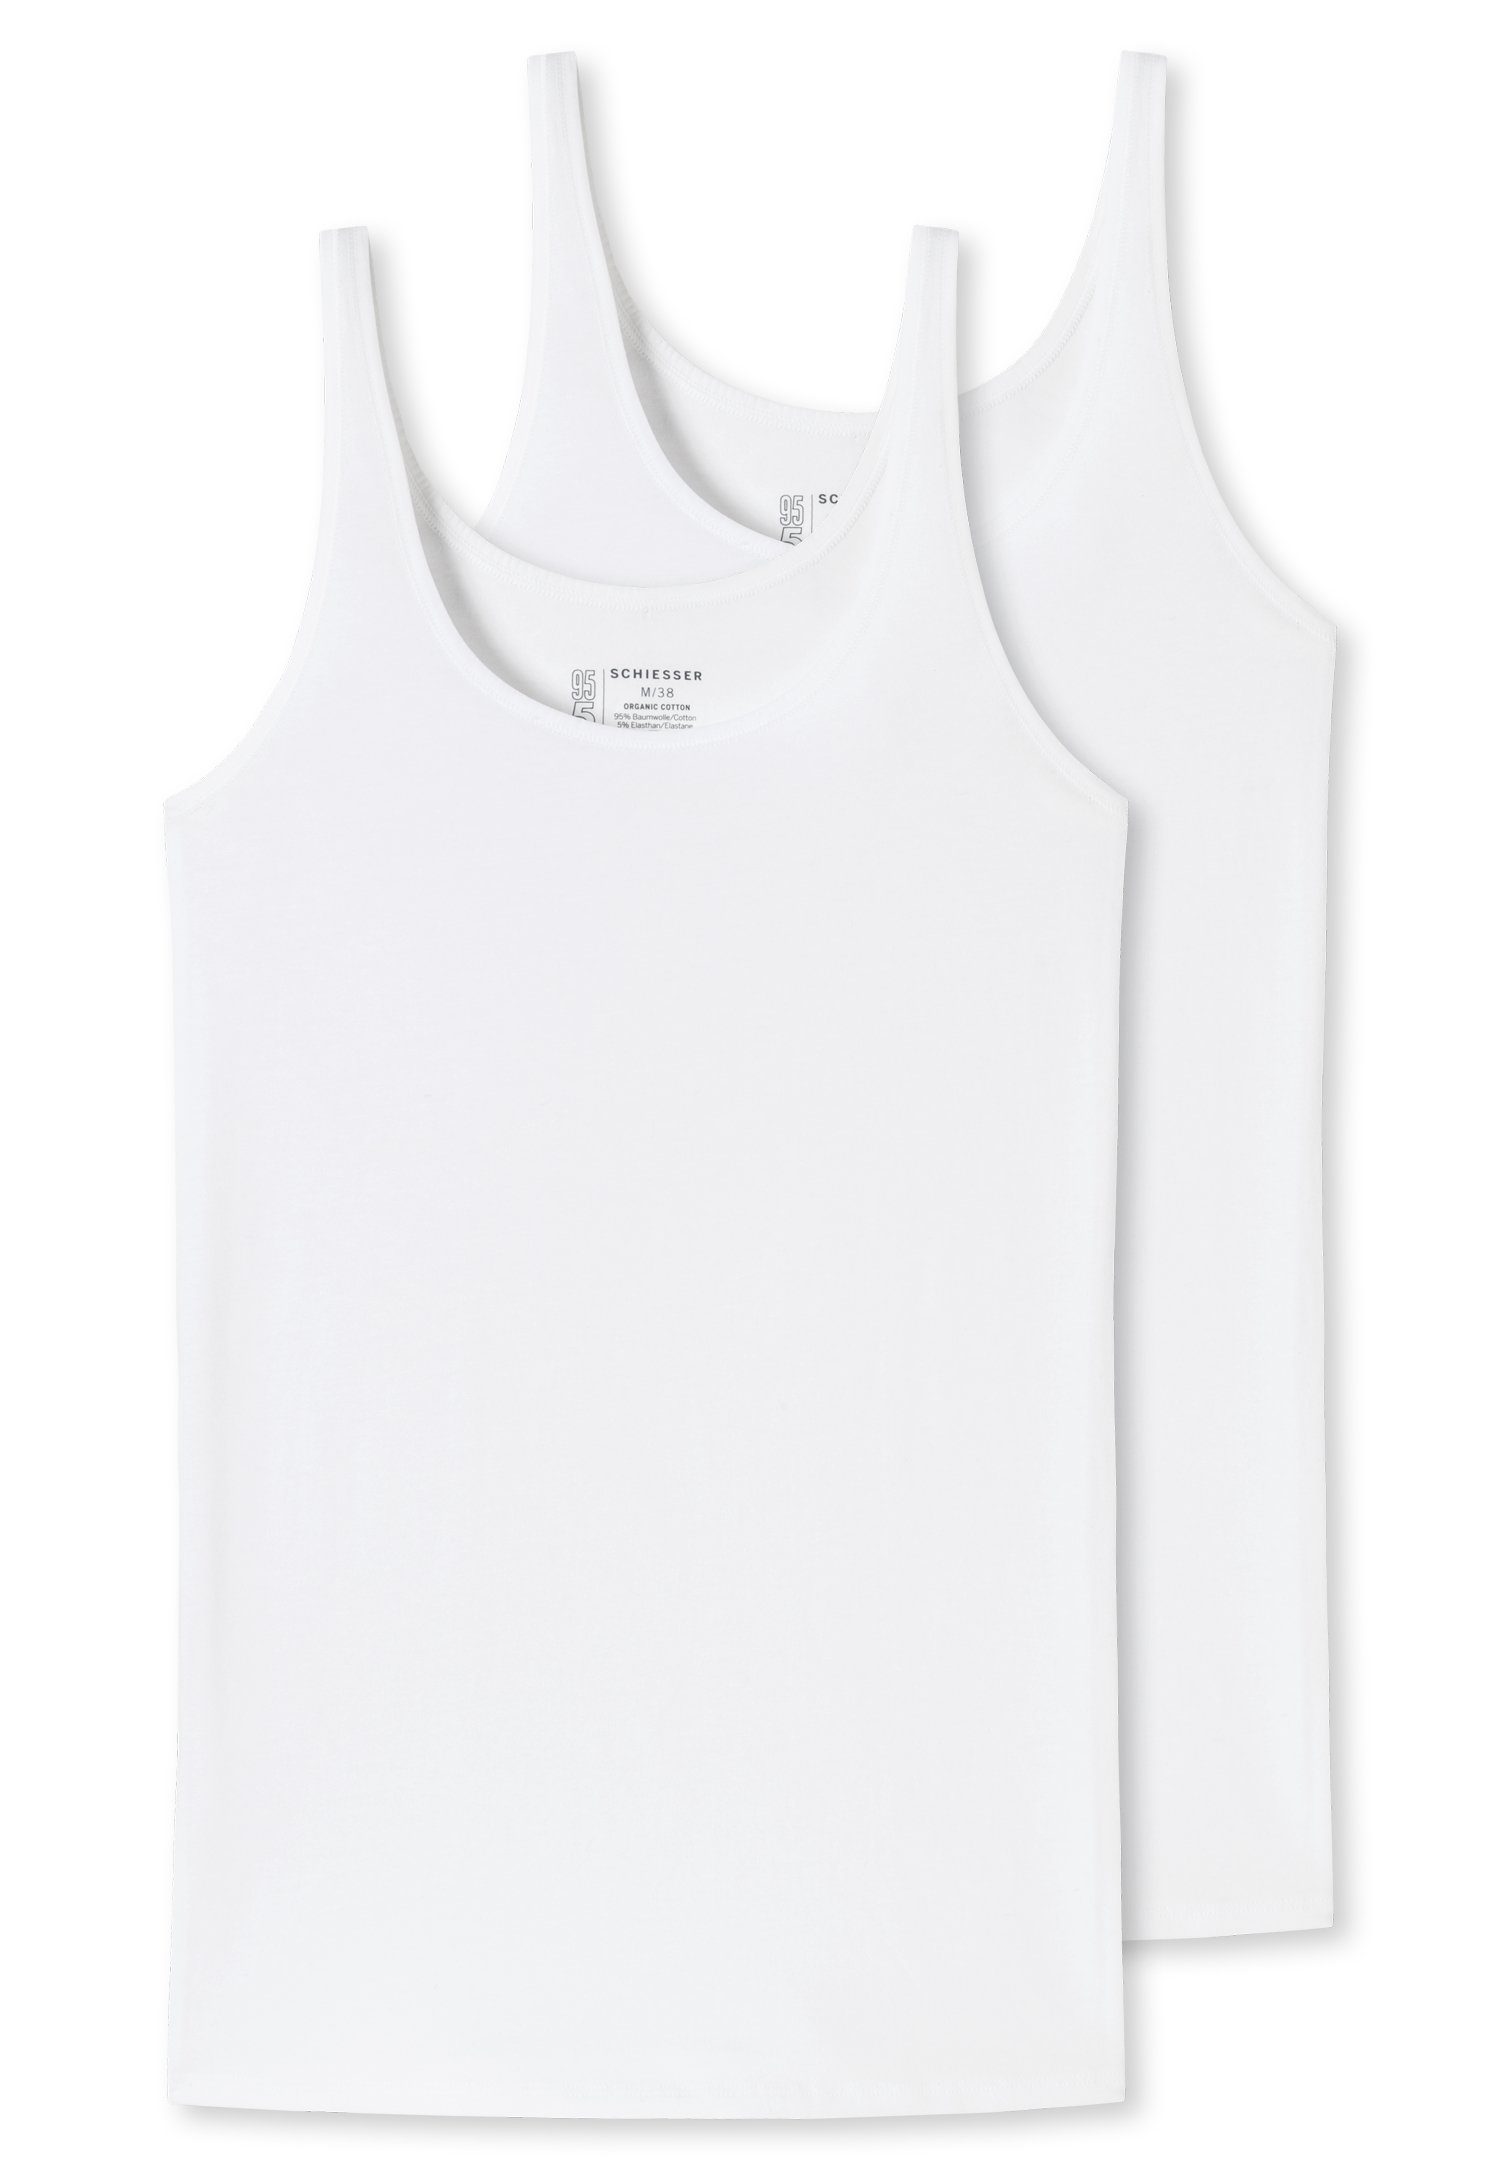 Schiesser Unterhemd (2er-Pack) 2xweiß mit elastischer Single-Jersey-Qualität